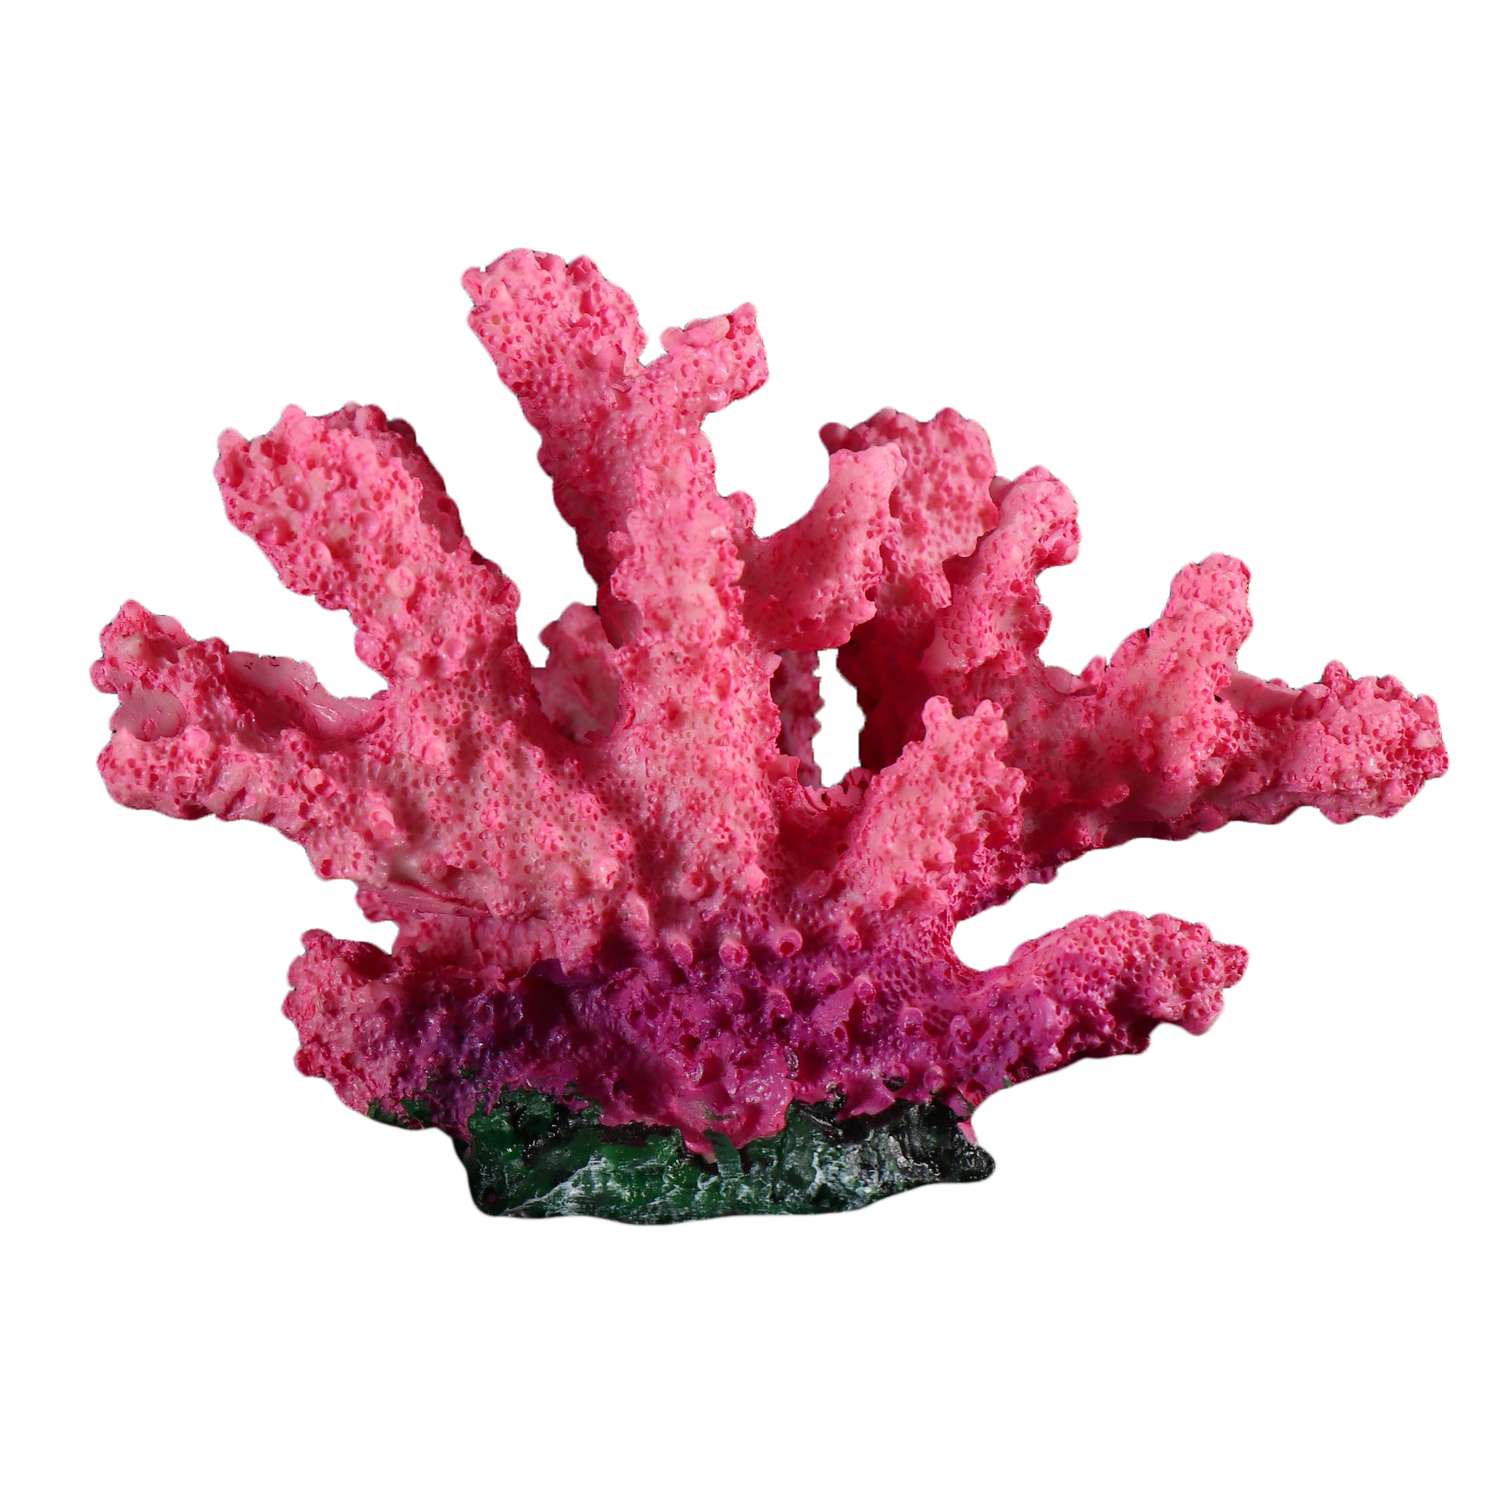 Добыча кораллов - Как добывают кораллы и делают украшения? в Москве